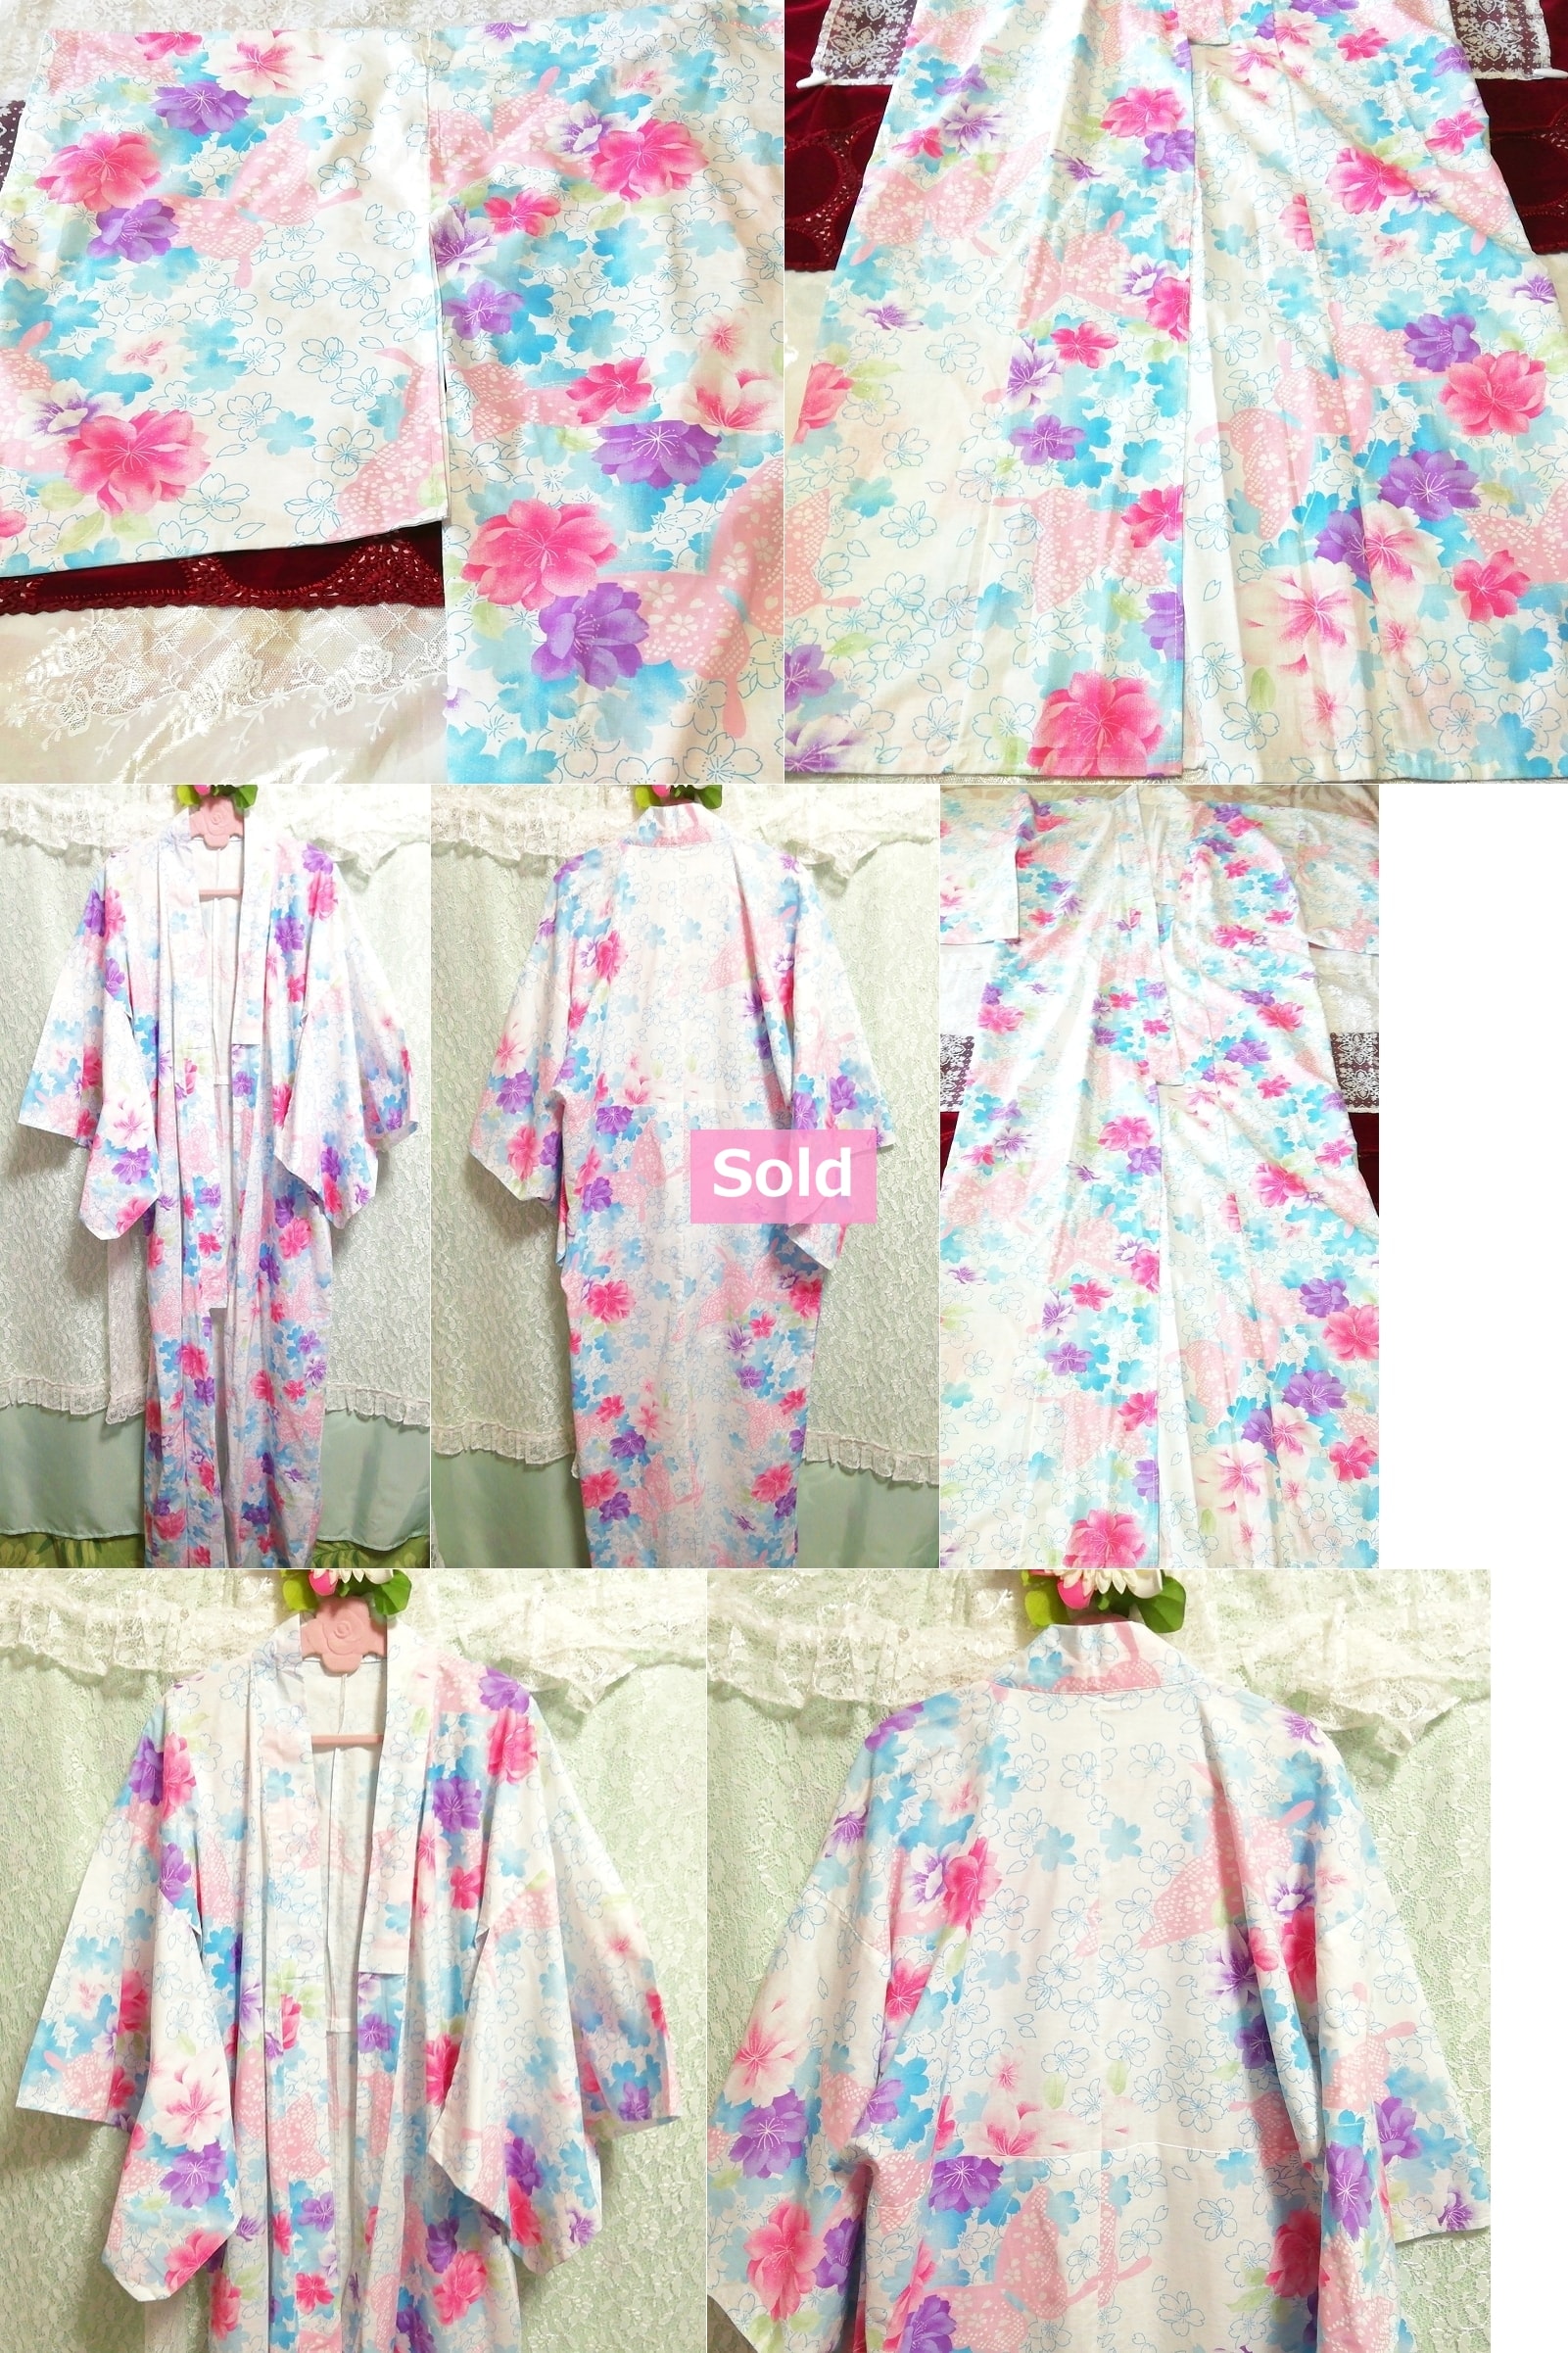 فستان ياباني يوكاتا كيمونو كيمونو ياباني مطبوع عليه زهور باللون الأرجواني المائي والأبيض والوردي, كيمونو نسائي, كيمونو, يوكاتا, آحرون